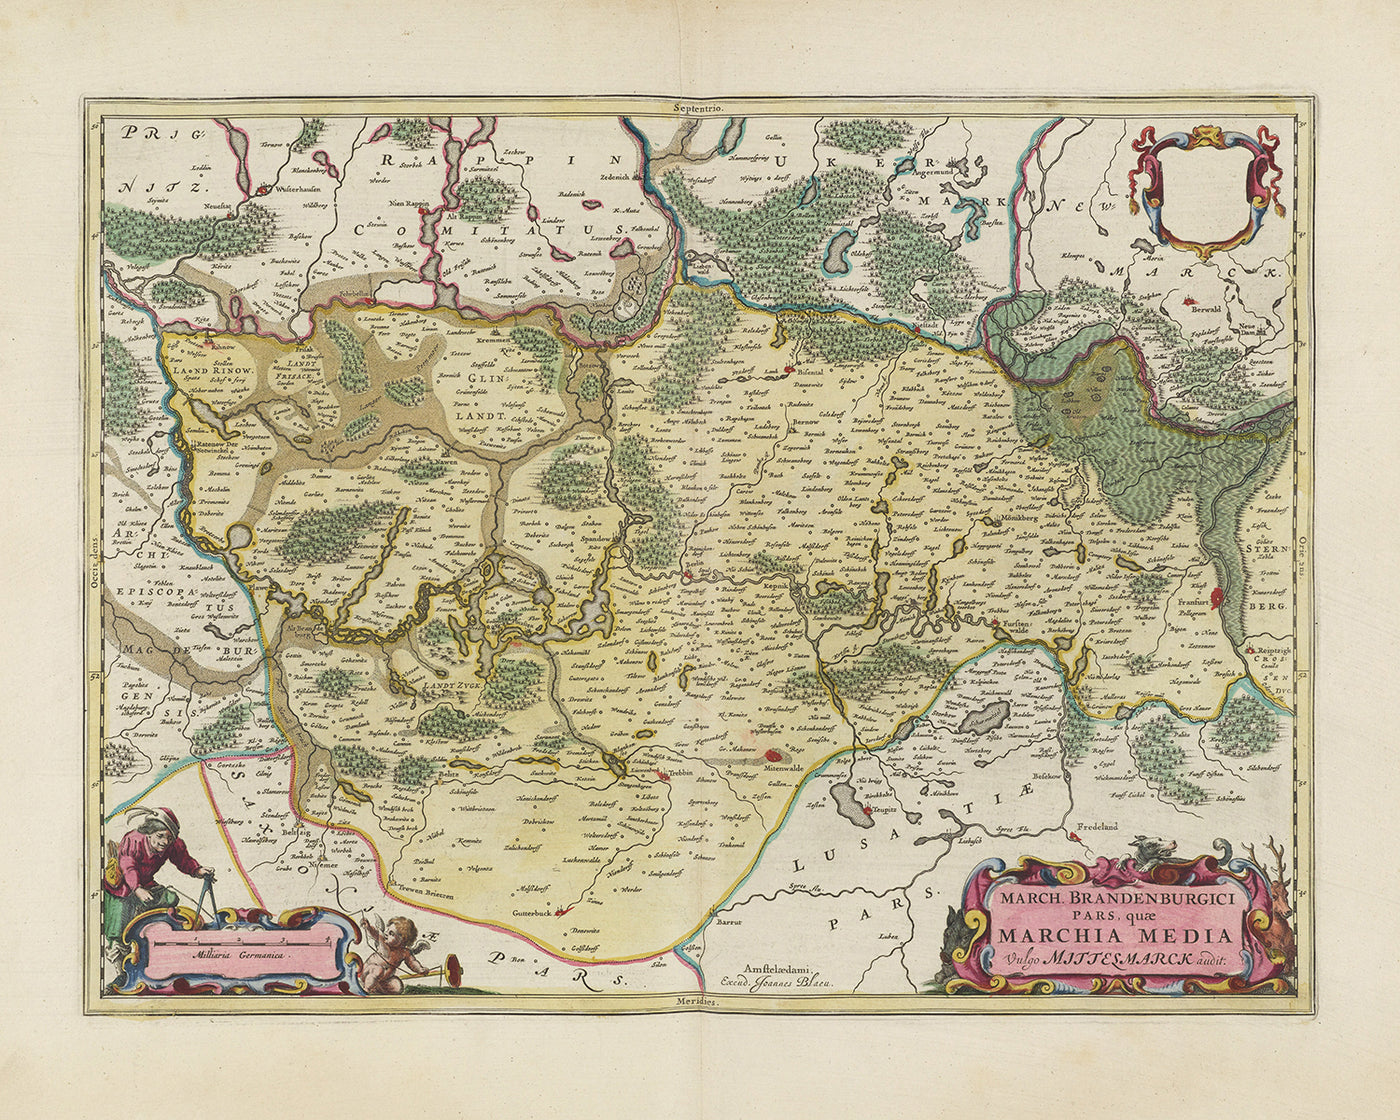 Mapa antiguo de Berlín-Brandeburgo por Joan Blaeu, 1665: Berlín, Potsdam, Cottbus, Frankfurt an der Oder y Brandenburgo an der Havel, con el río Spree, el Havel y la Märkische Schweiz.